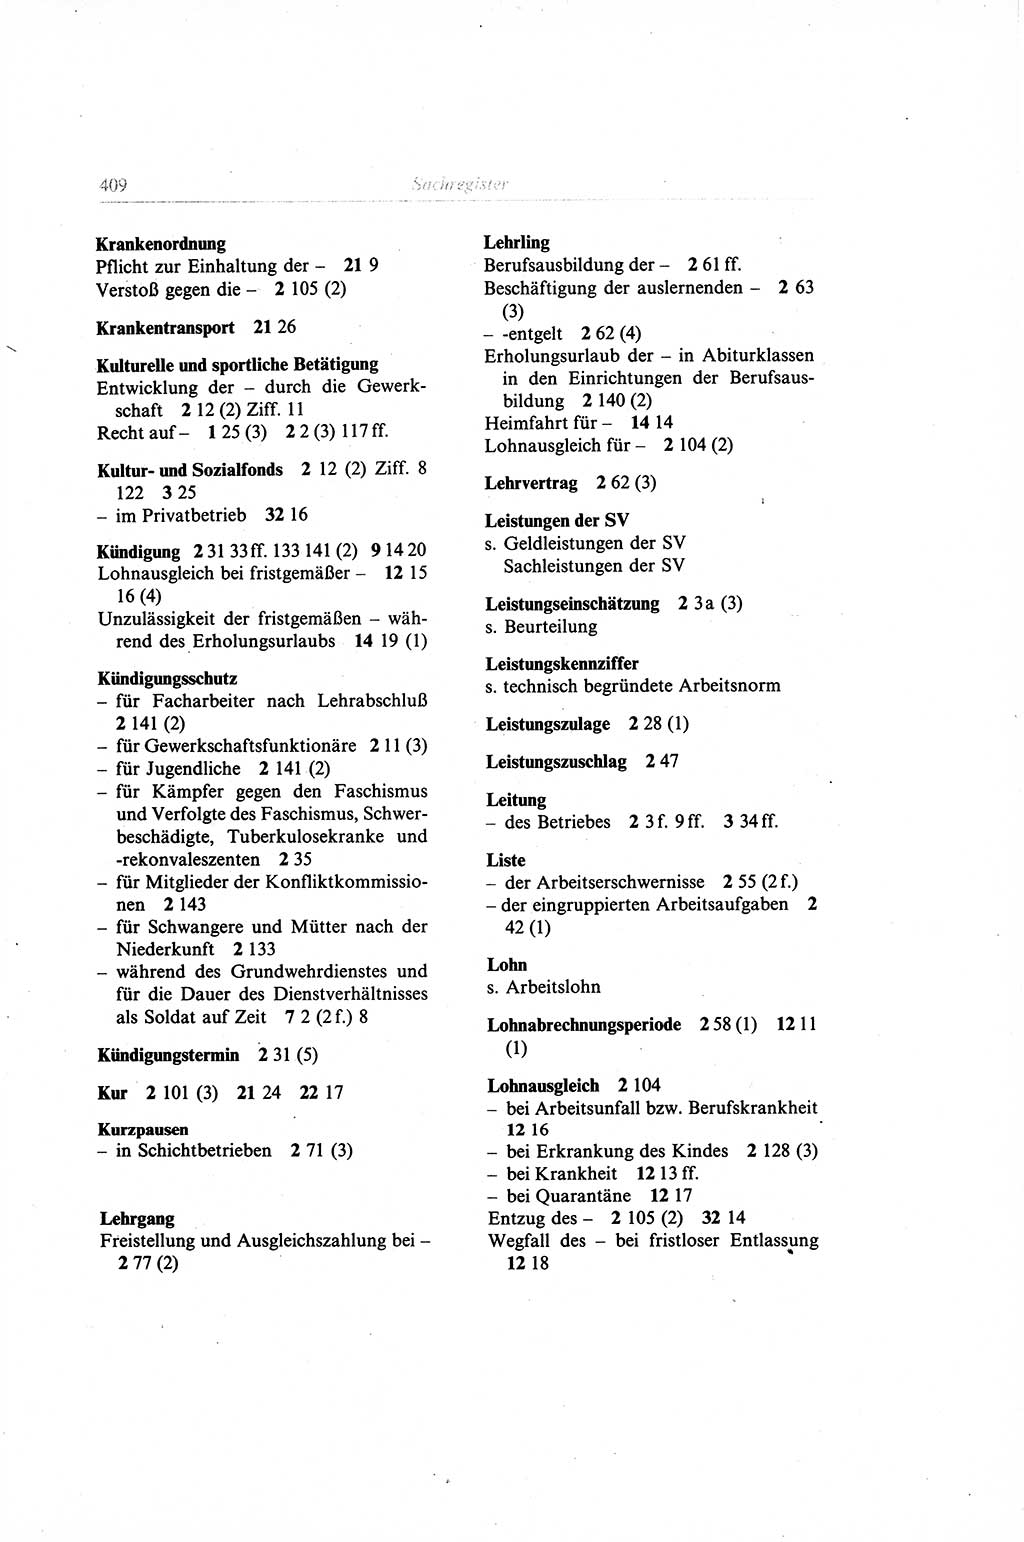 Gesetzbuch der Arbeit (GBA) und andere ausgewählte rechtliche Bestimmungen [Deutsche Demokratische Republik (DDR)] 1968, Seite 409 (GBA DDR 1968, S. 409)